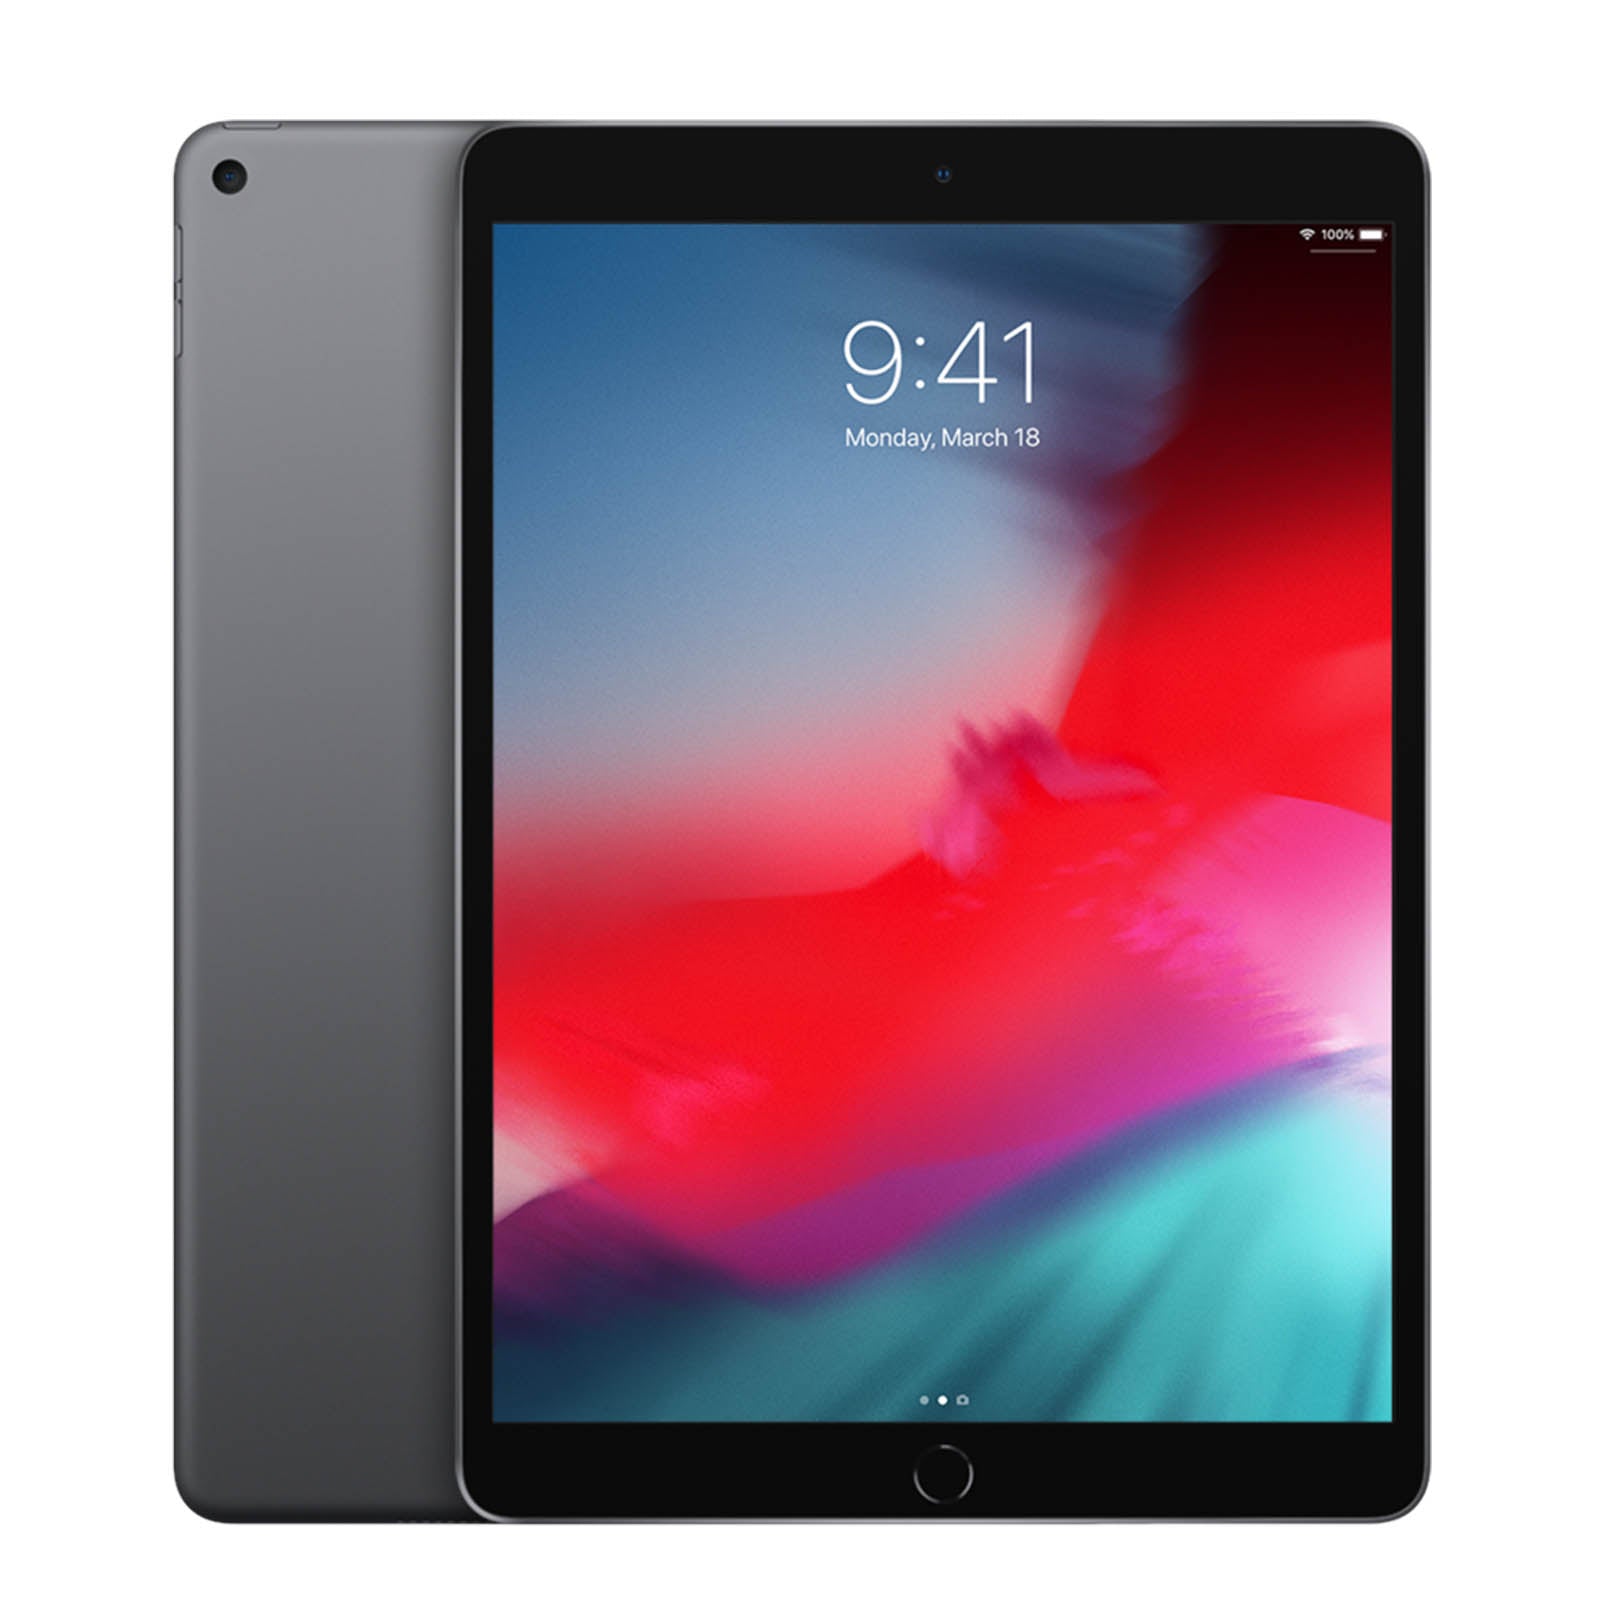 Apple iPad Air 3 64GB Ohne Vertrag - Space Grau - Gut